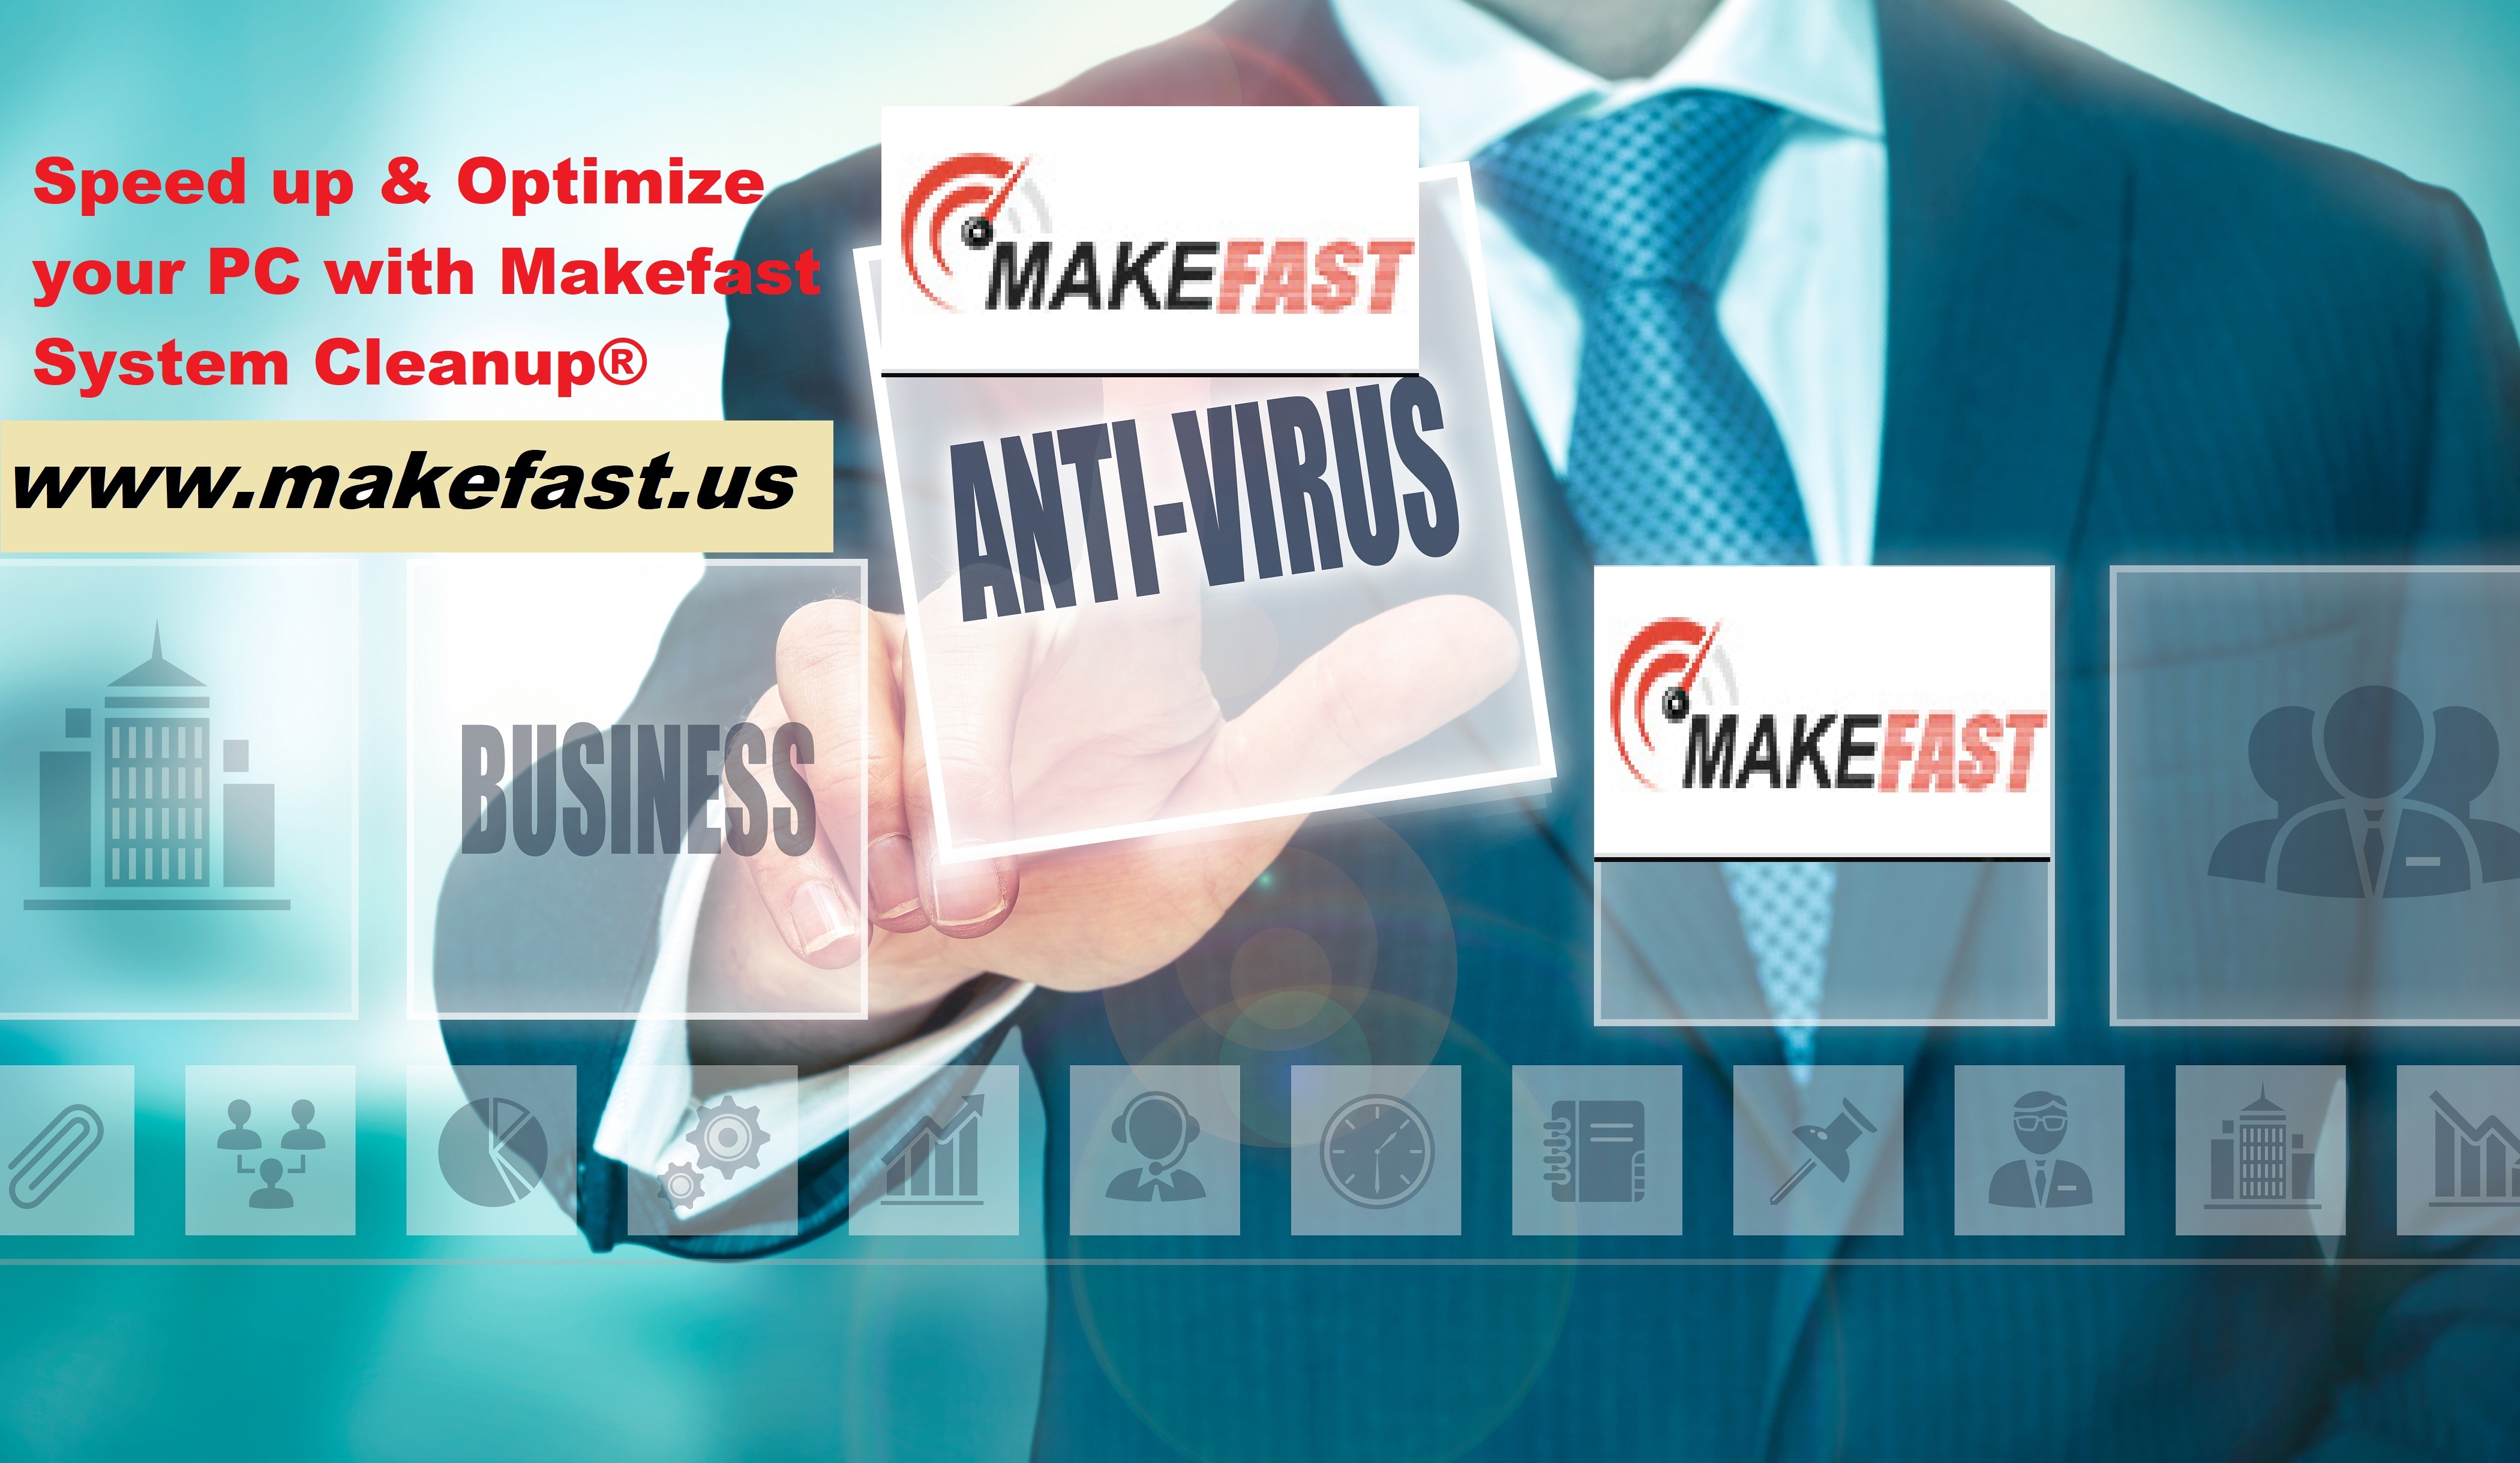 Makefast - Makefast Online Technical Support